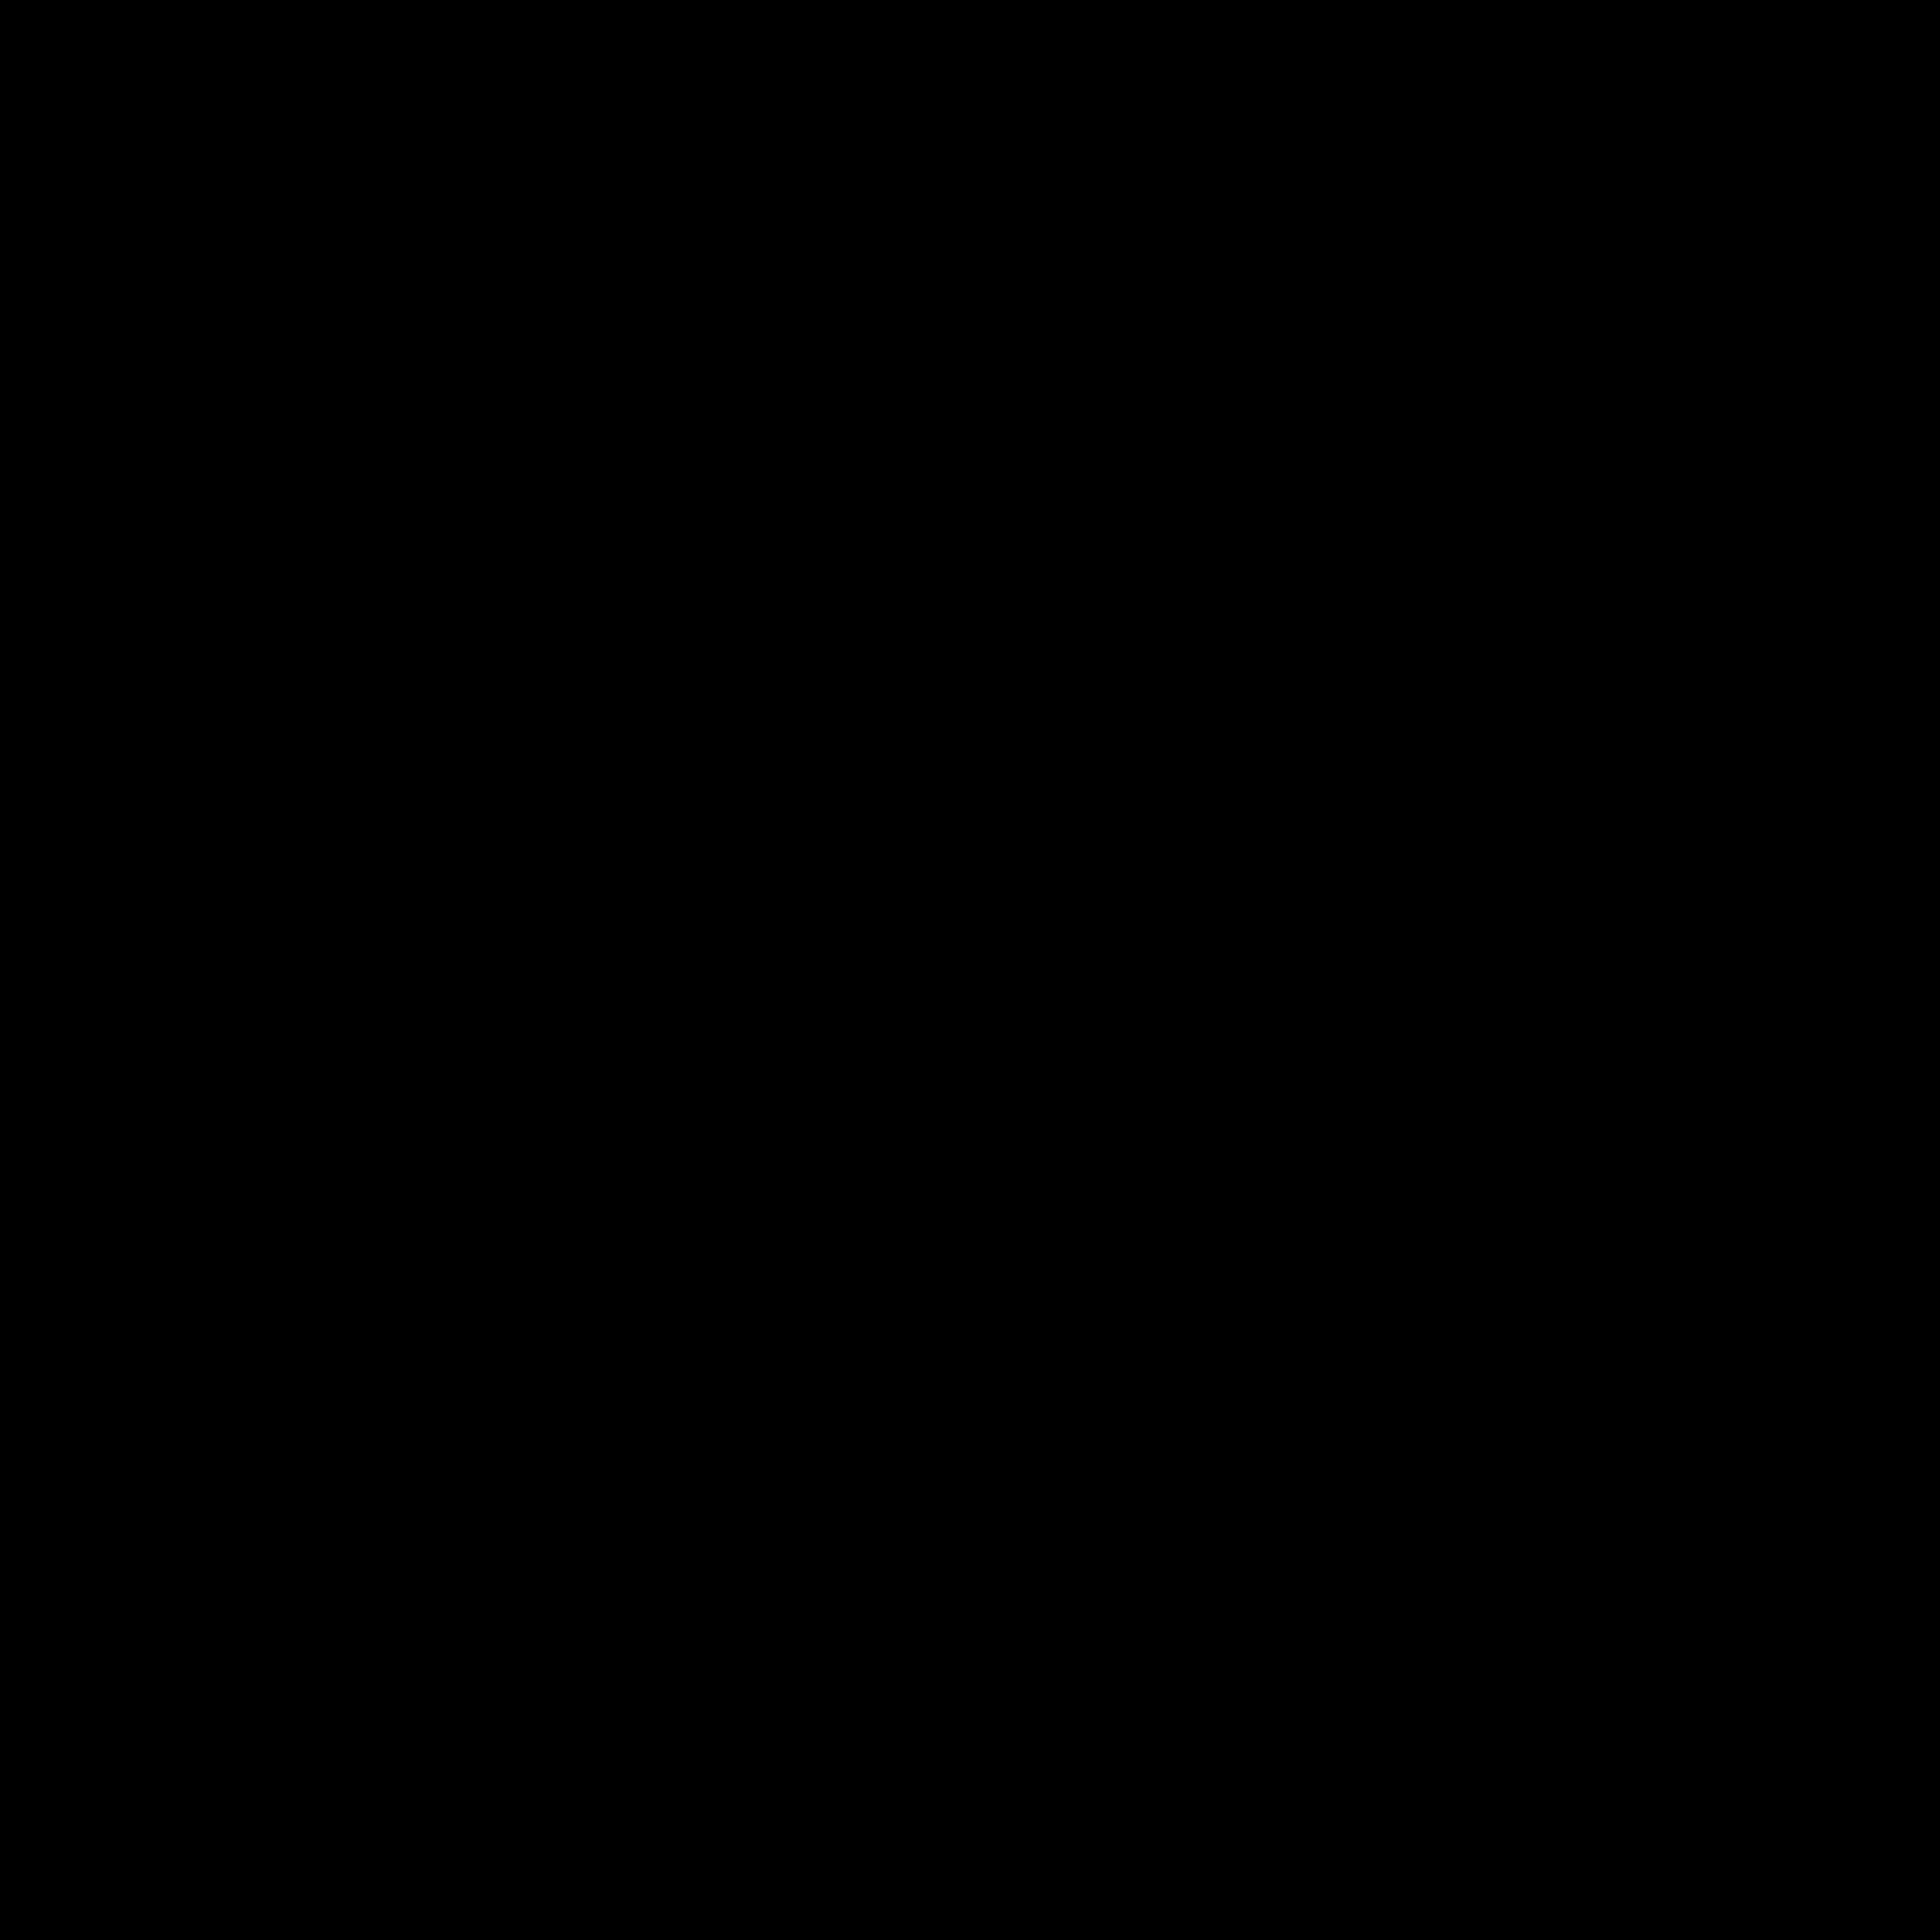 numadic's logo